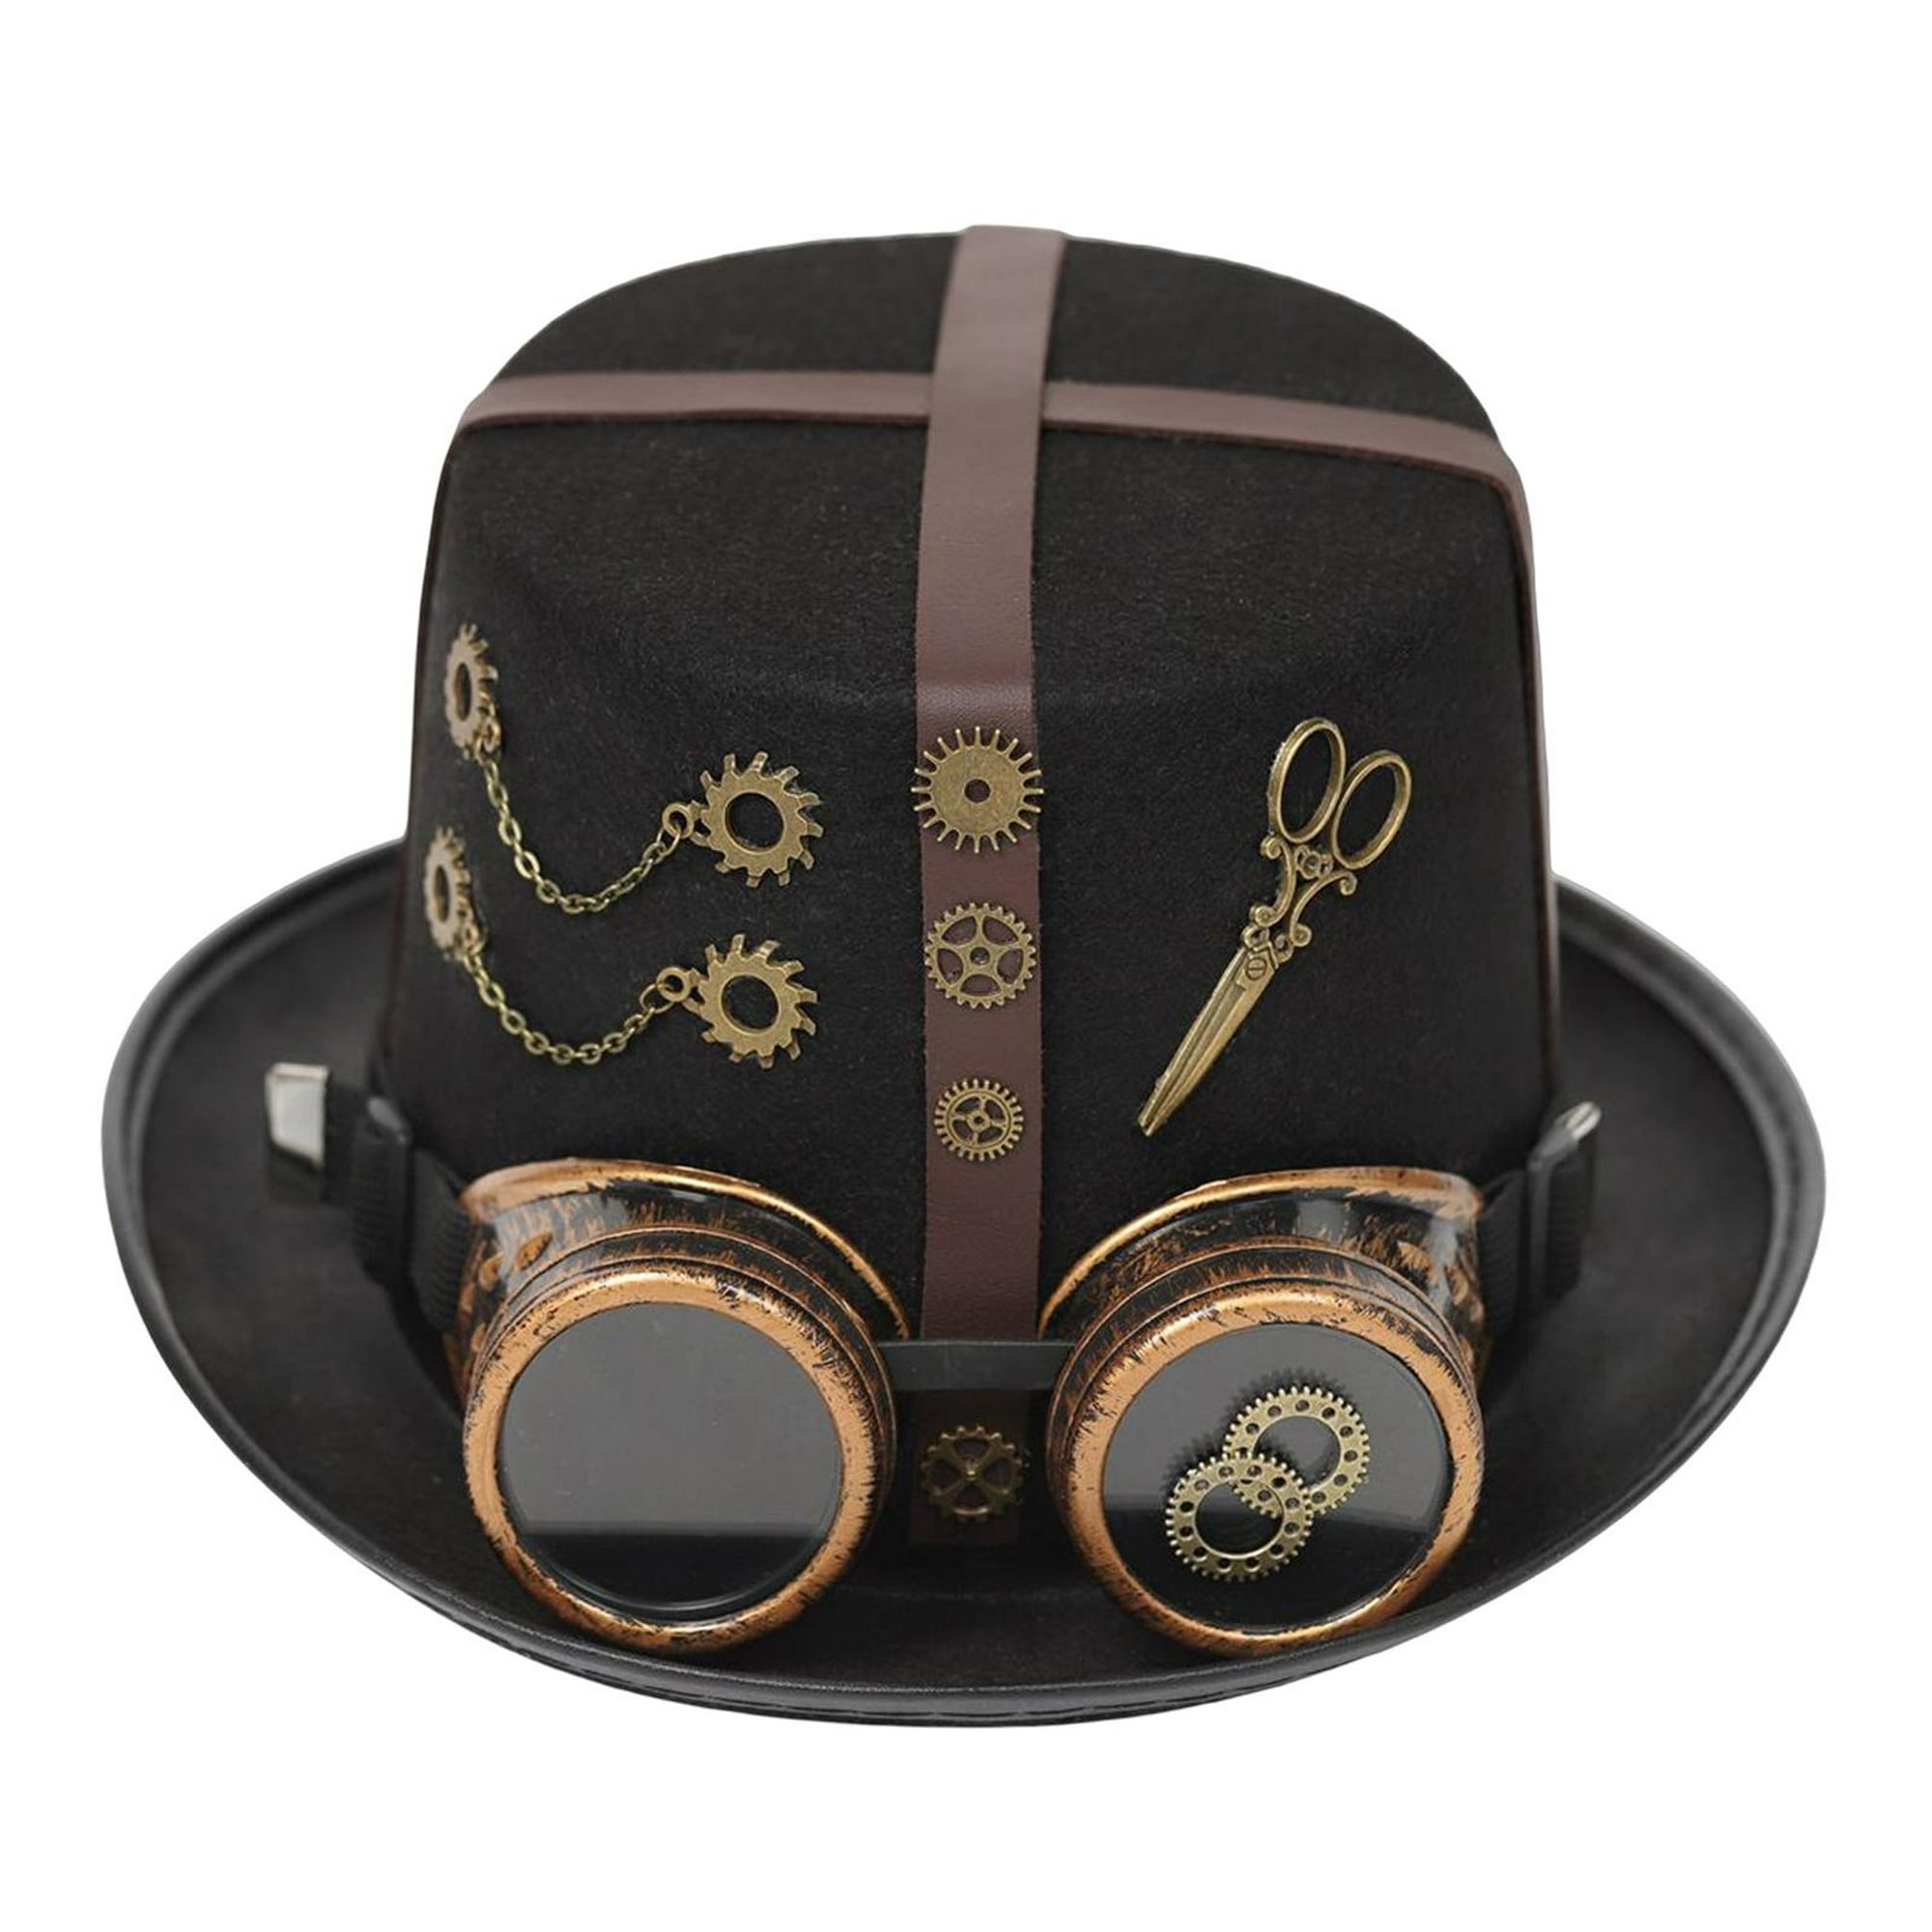 Steampunk de estilo retro, de disfraces de , sombrero de baile novedoso para Cosplay, vac Yinane Sombrero de Steampunk en línea